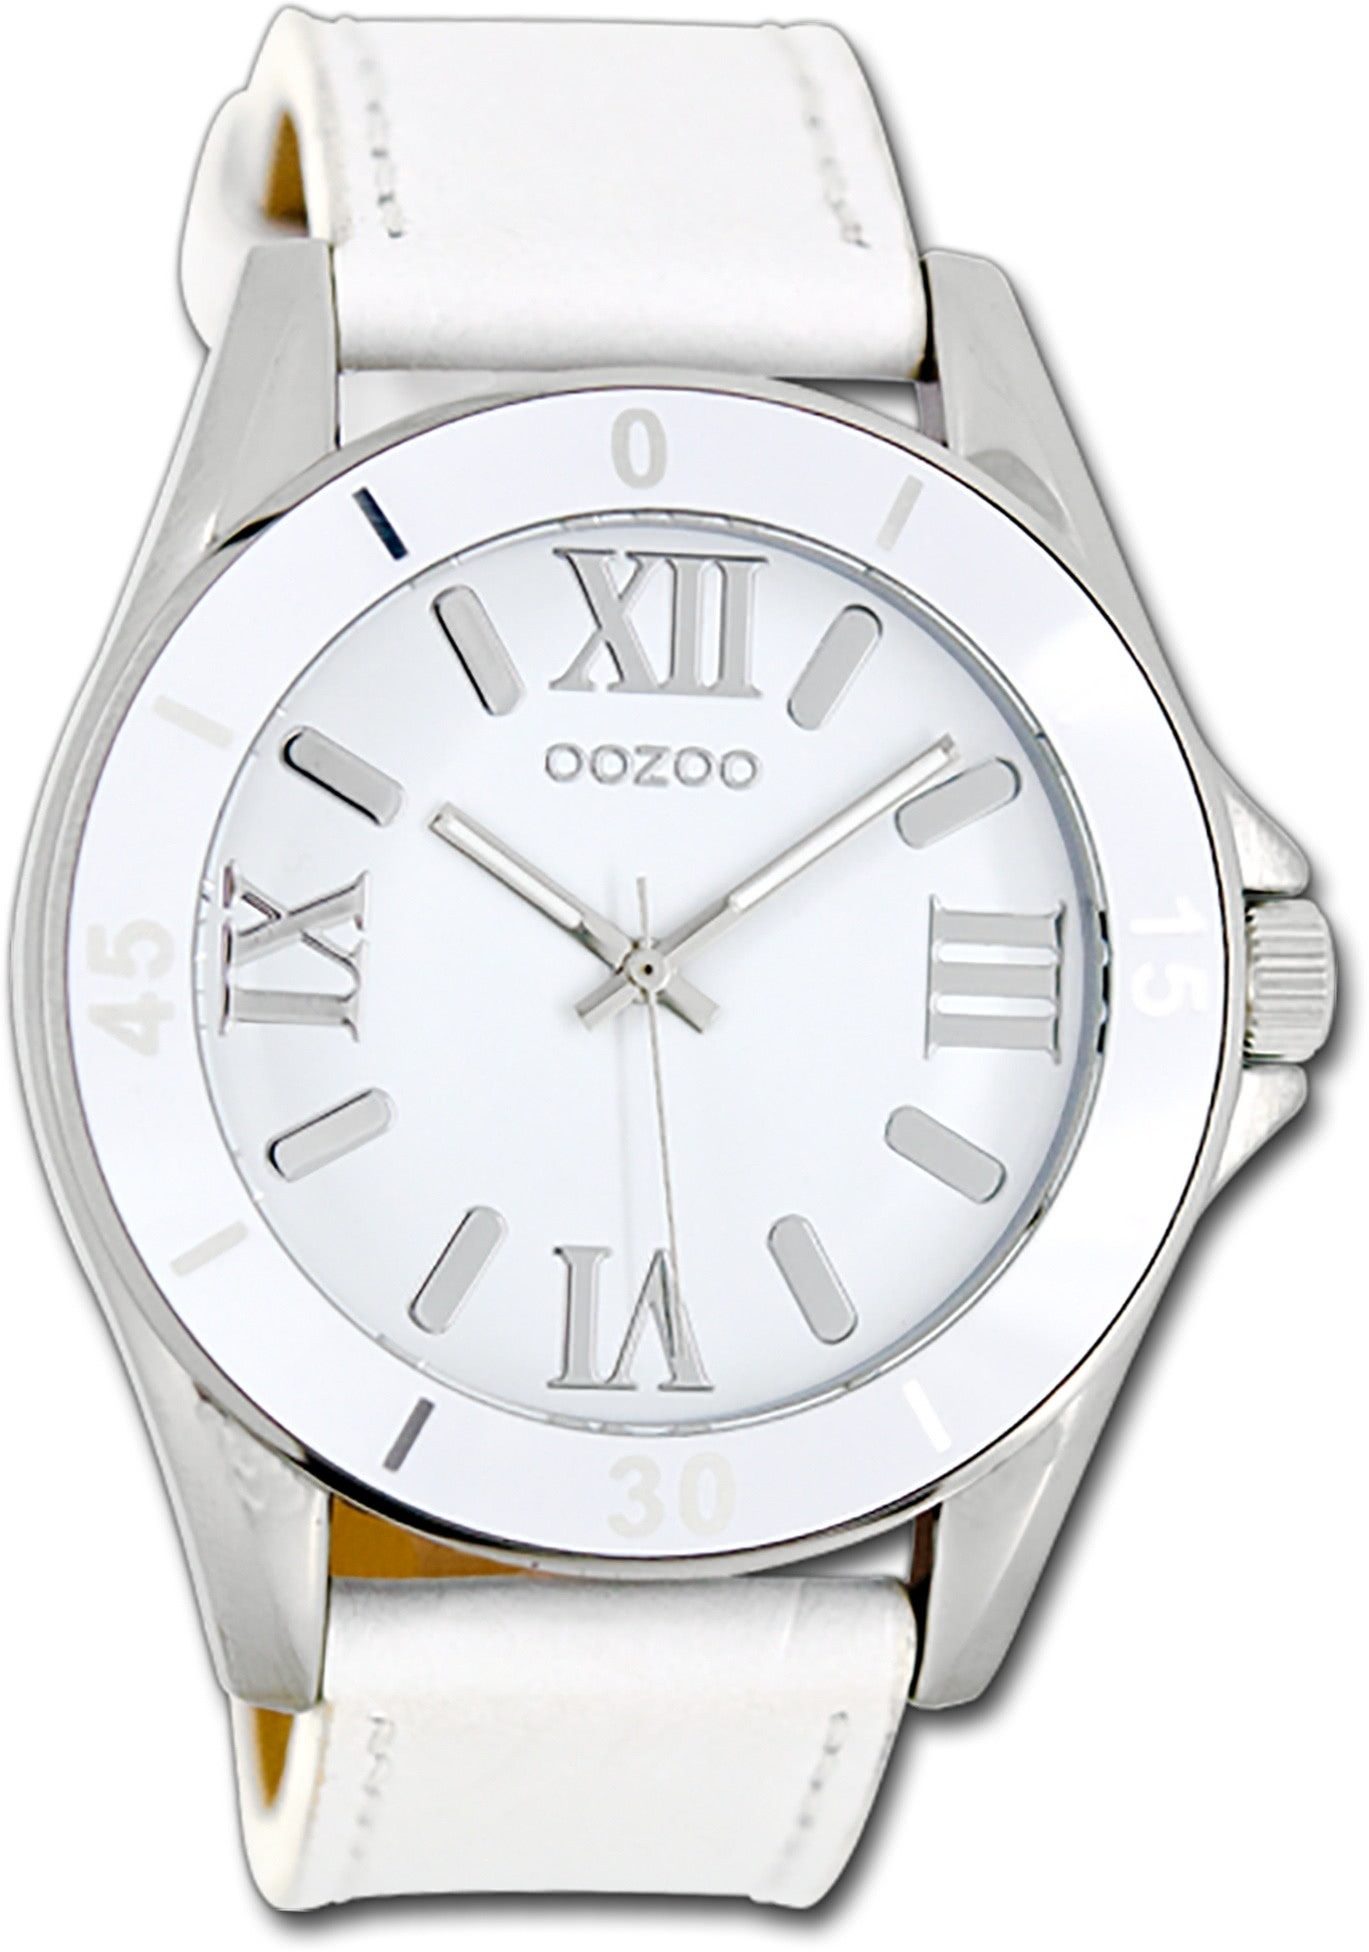 OOZOO Quarzuhr Oozoo Unisex Armbanduhr Vintage Series, (Analoguhr), Damen, Herrenuhr Lederarmband weiß, rundes Gehäuse, groß (ca. 45mm)